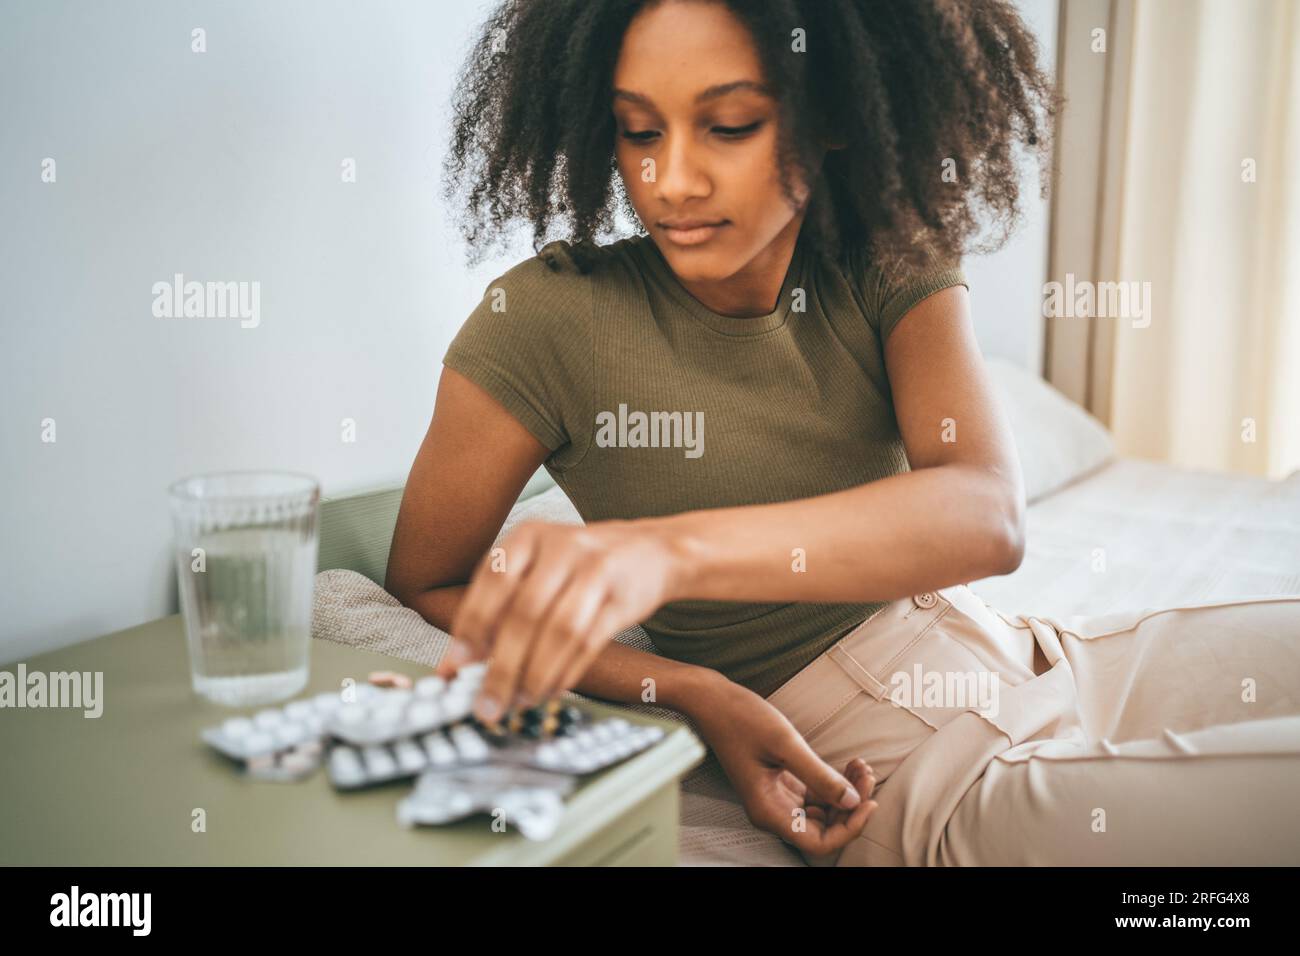 La ragazza afroamericana prende pillole o compresse dal tavolo. Farmaci, vitamine o integratori alimentari. Foto Stock